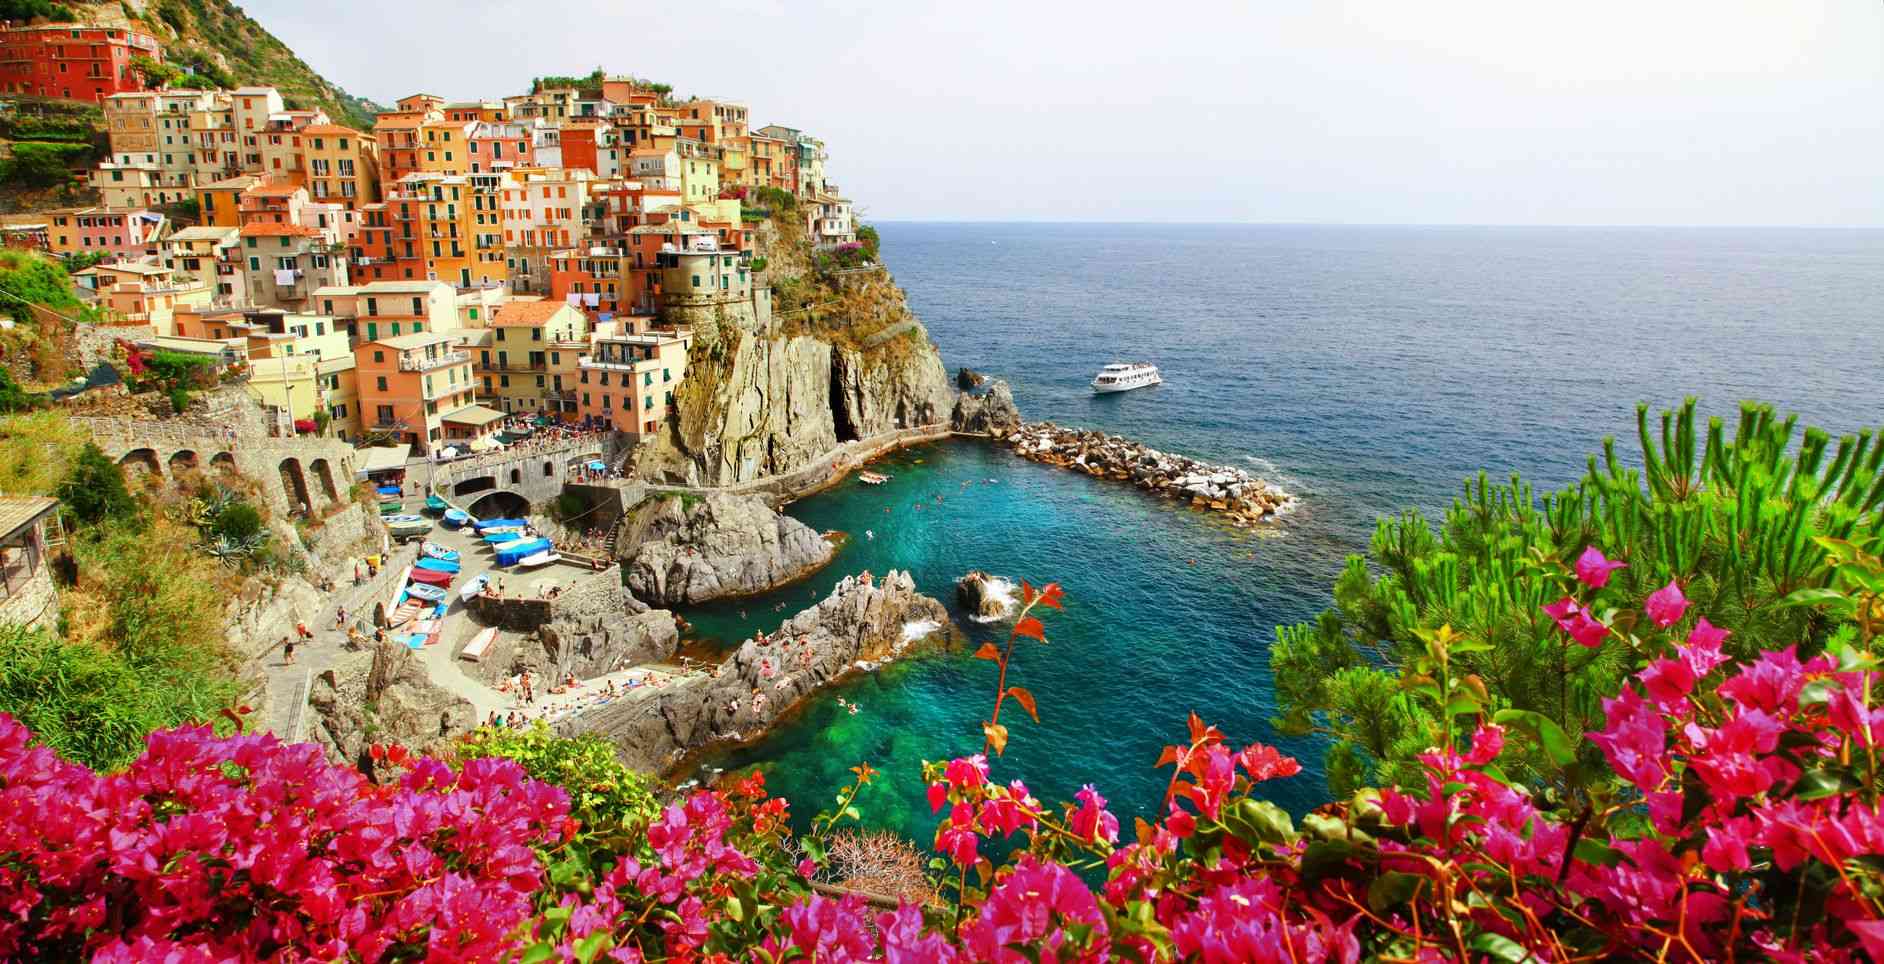 The Coast of Italy